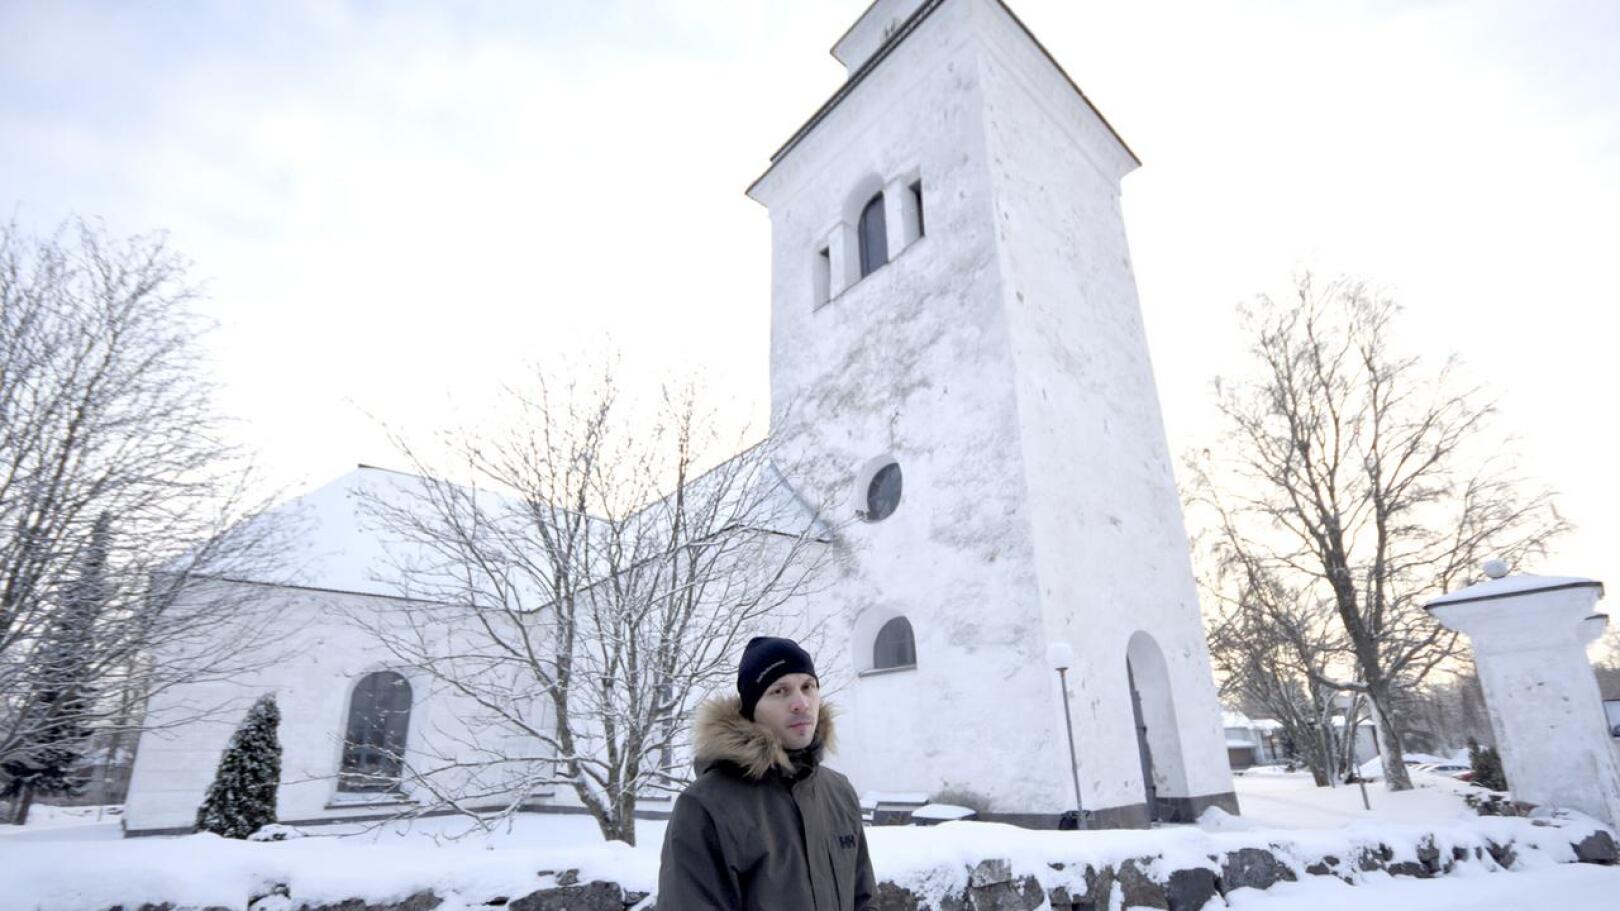 Suurin kunnostustyö kohdistuu kirkontorniin, jossa rappaus on heikoimmassa kunnossa, kertoo kiinteistöpäällikkö Veli-Matti Raappana.